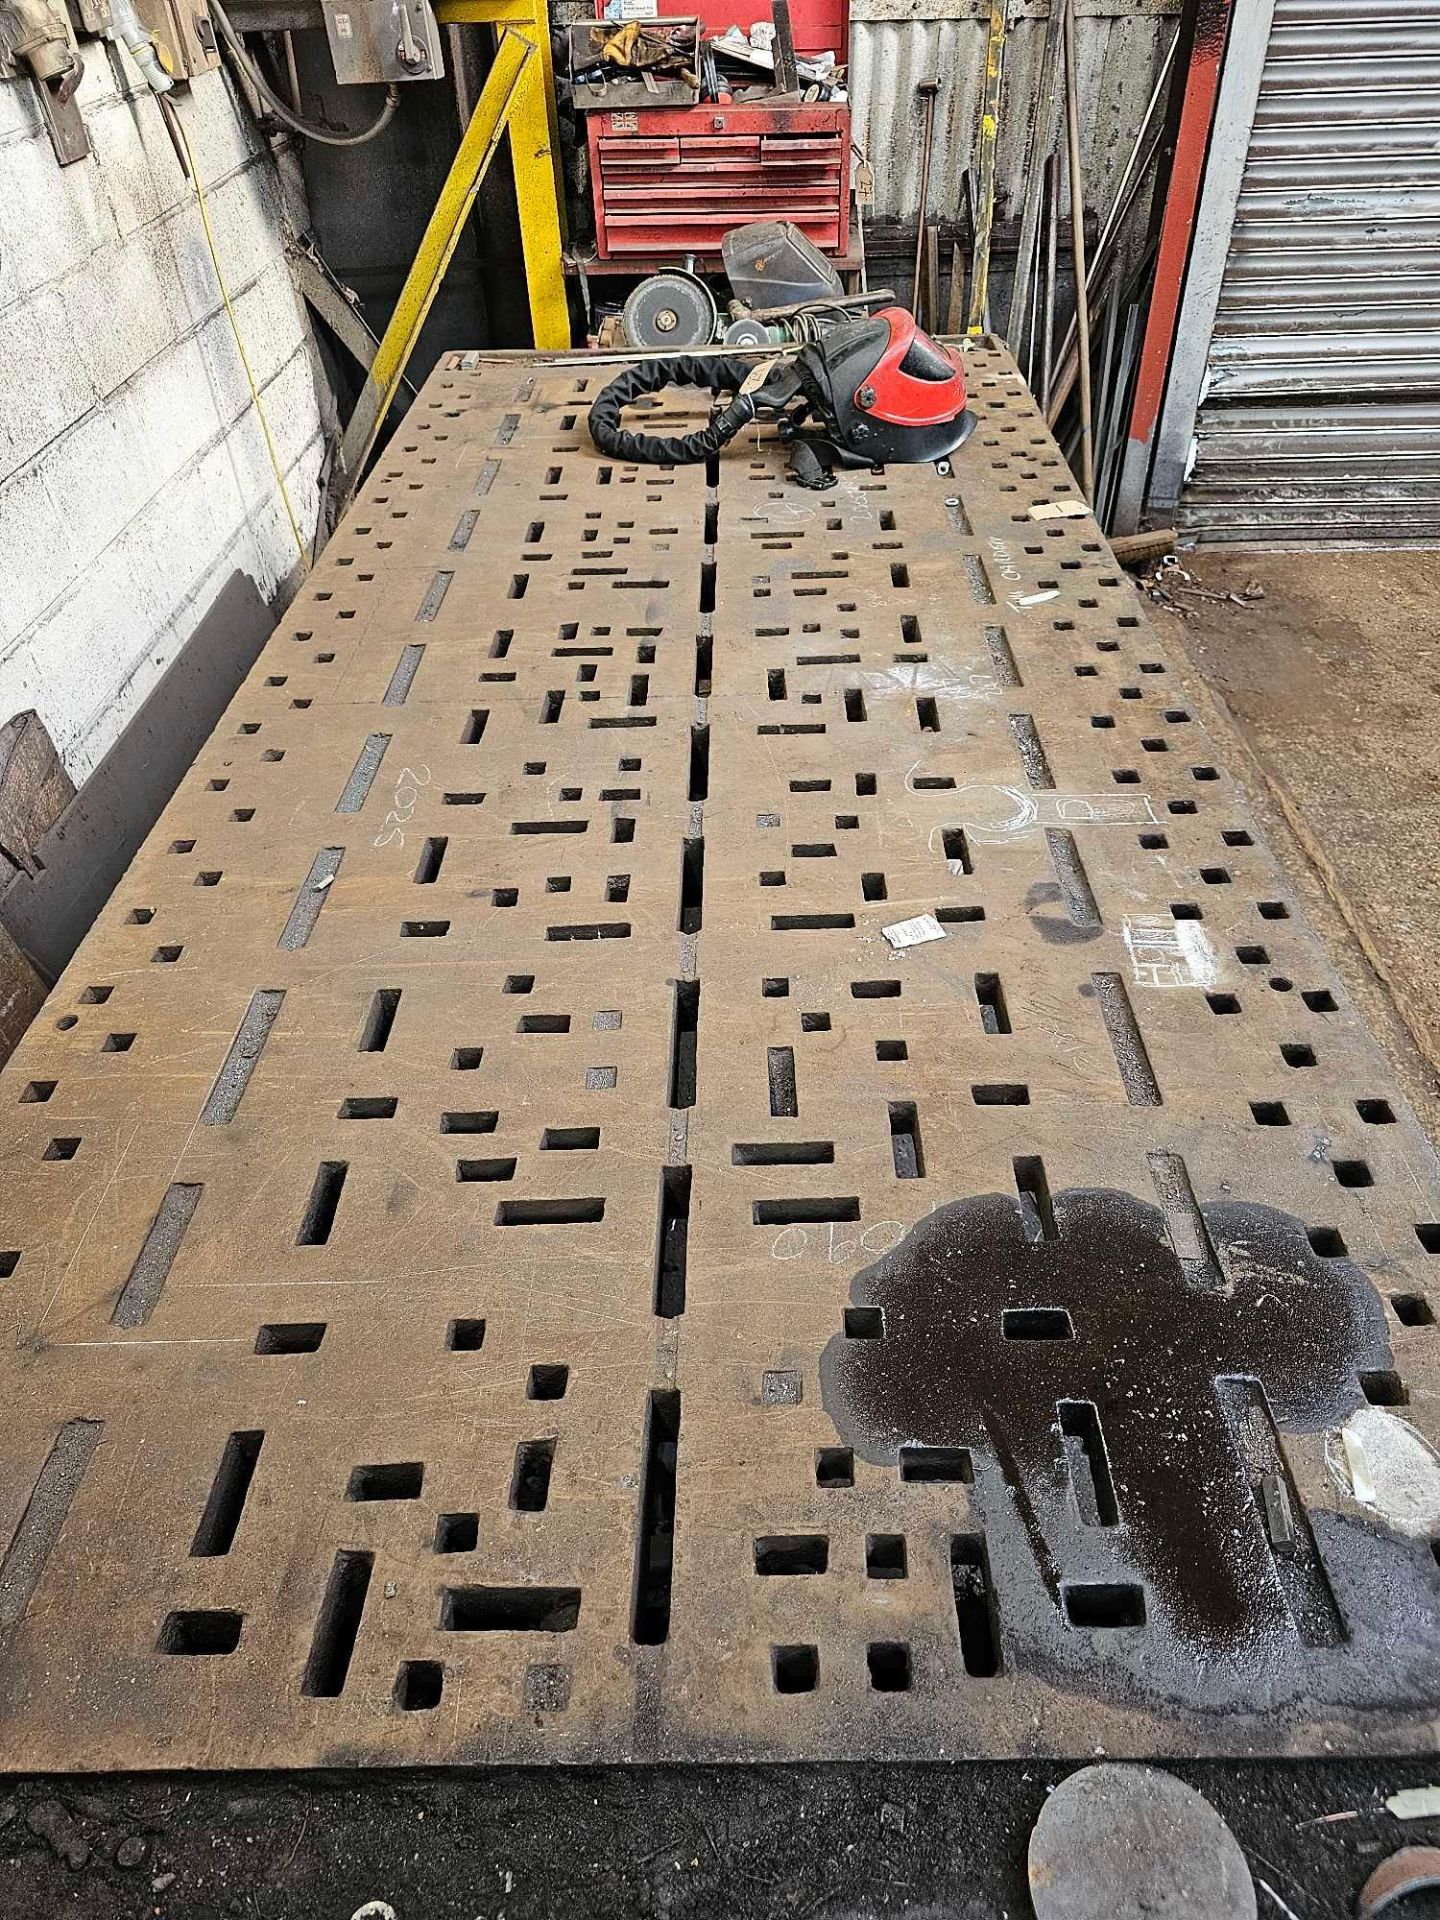 Cast Steel Engineers Marking Out Work Bench 310 x 128 x 91cm Weight 2000kg - Bild 3 aus 4